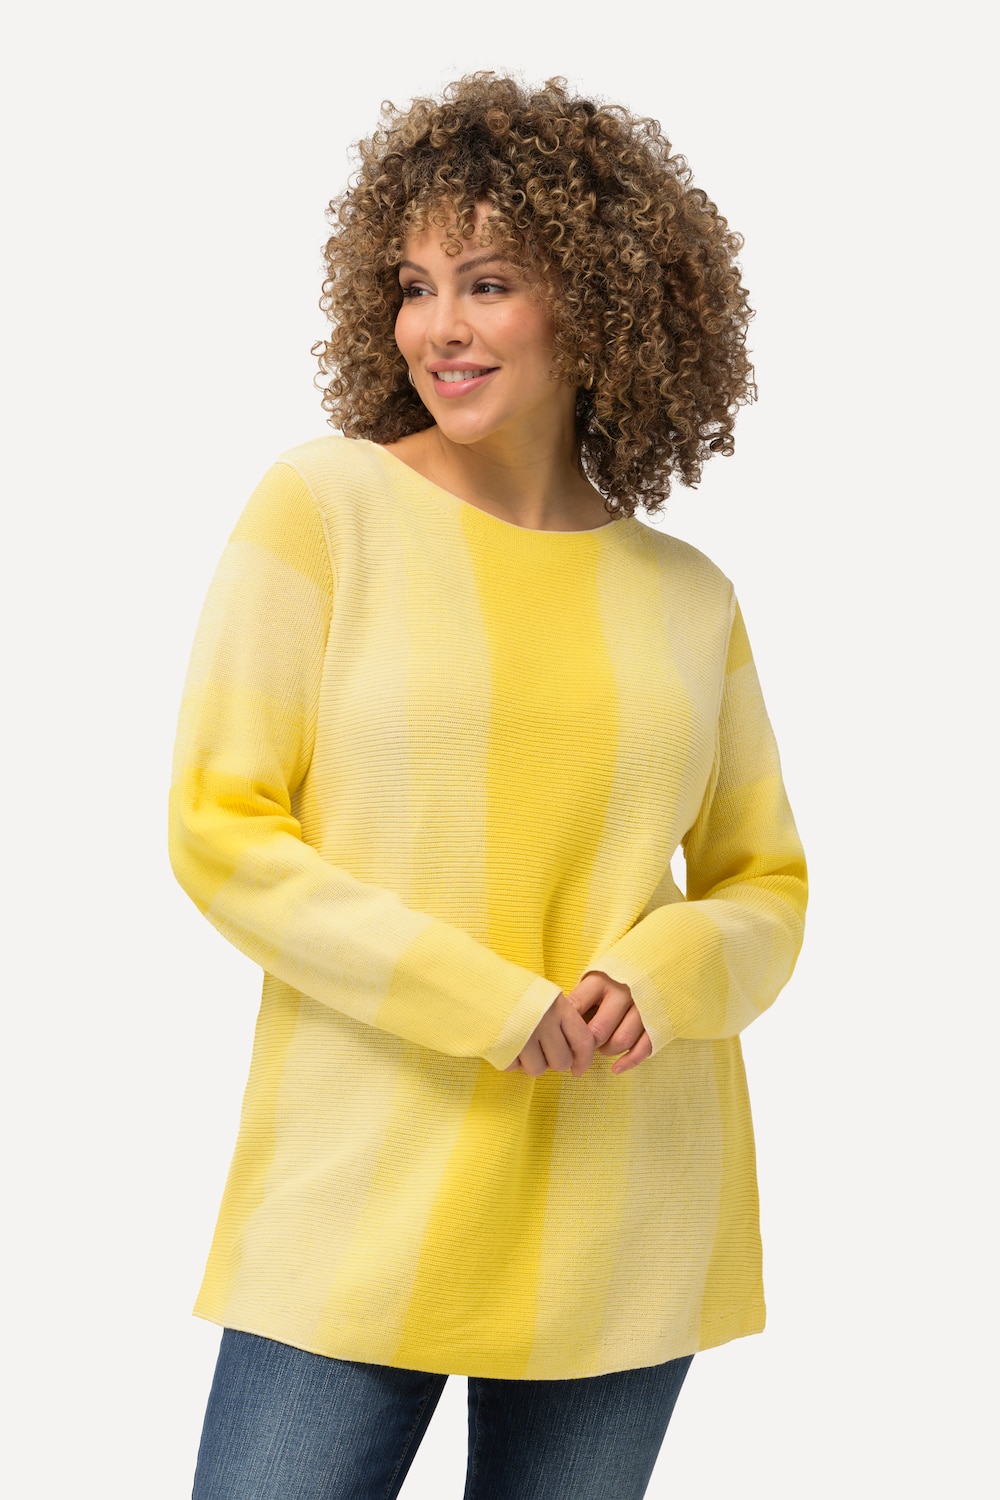 Große Größen Pullover, Damen, gelb, Größe: 62/64, Baumwolle, Ulla Popken von Ulla Popken